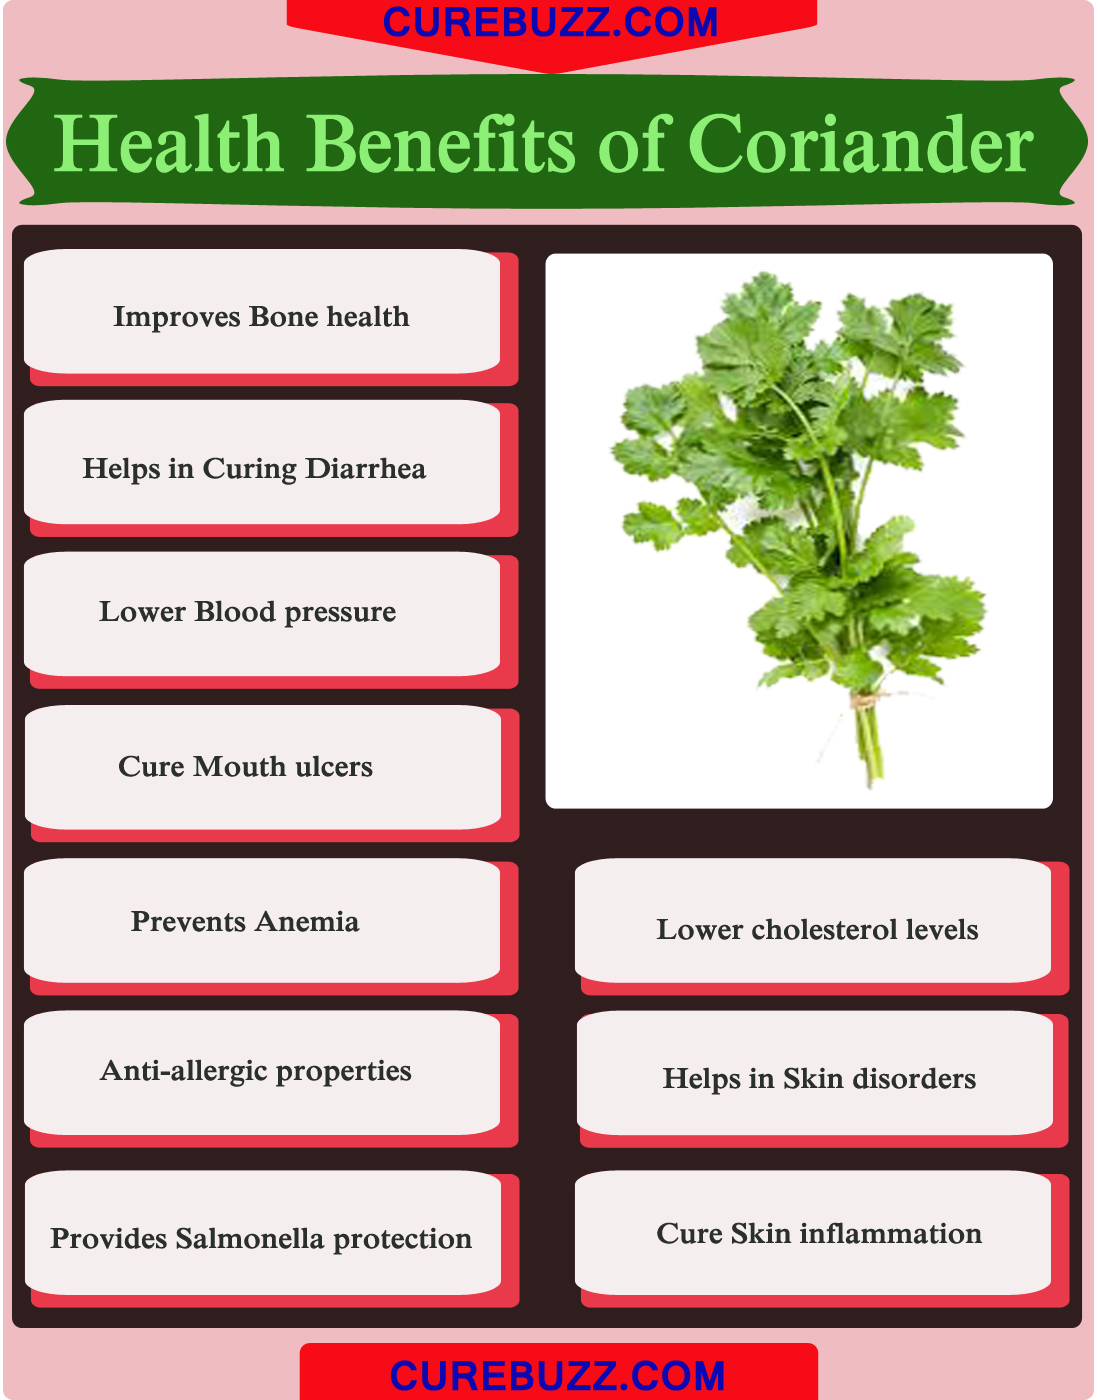 10 Health Benefits Of Coriander Curebuzz